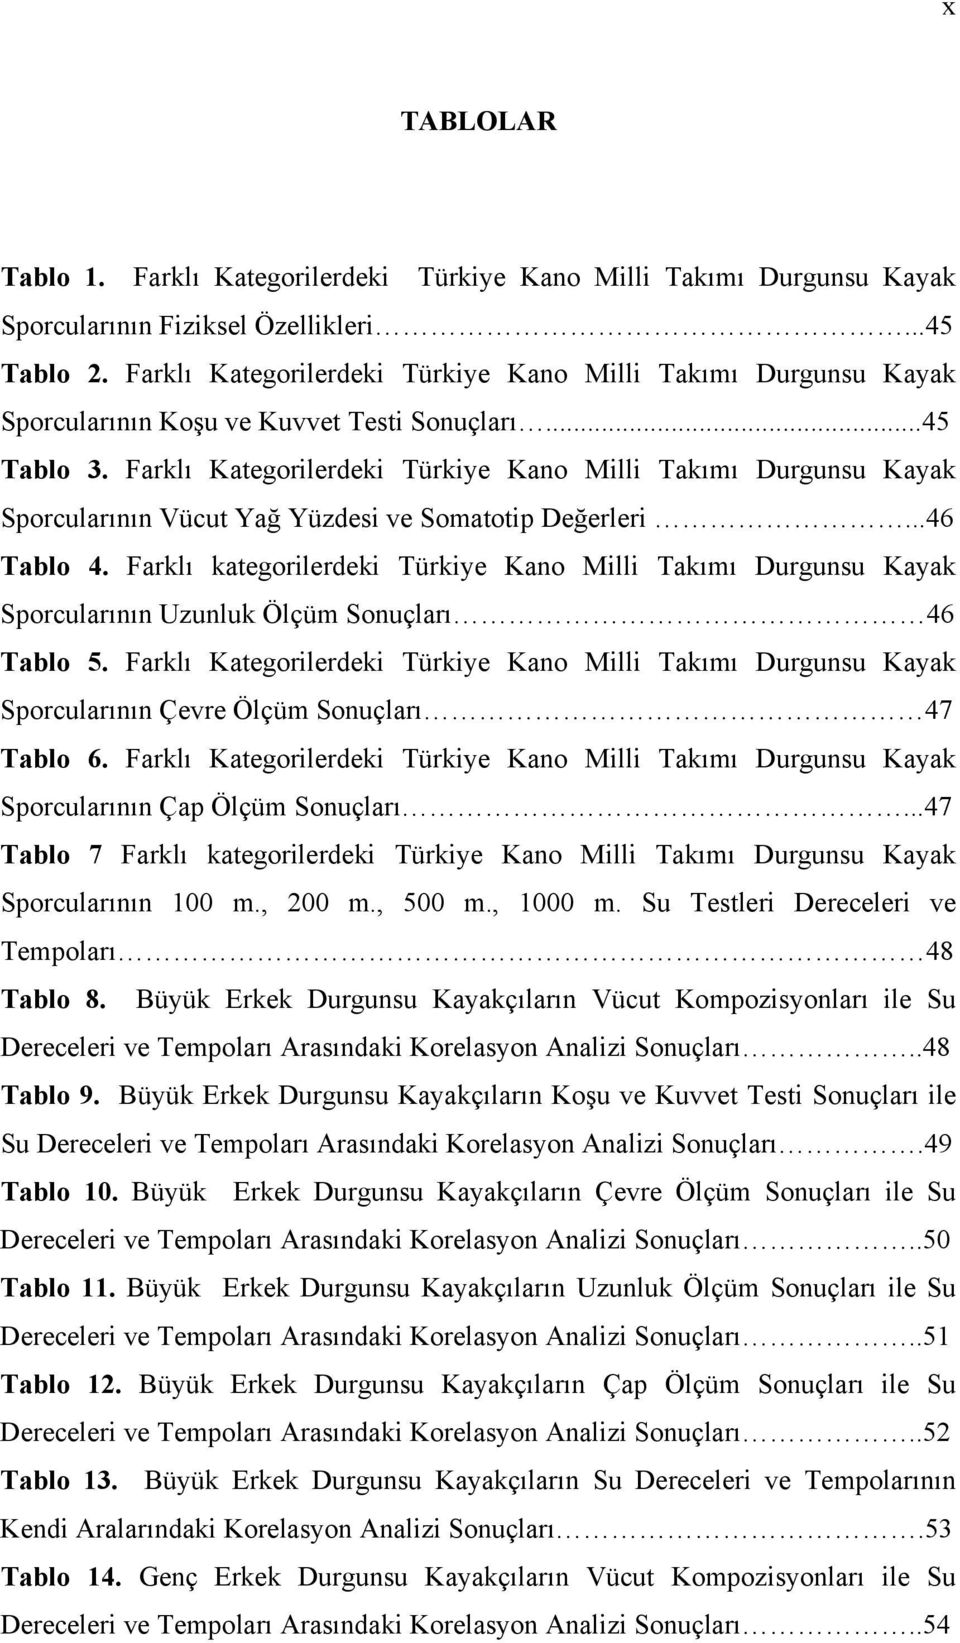 Farklı Kategorilerdeki Türkiye Kano Milli Takımı Durgunsu Kayak Sporcularının Vücut Yağ Yüzdesi ve Somatotip Değerleri...46 Tablo 4.